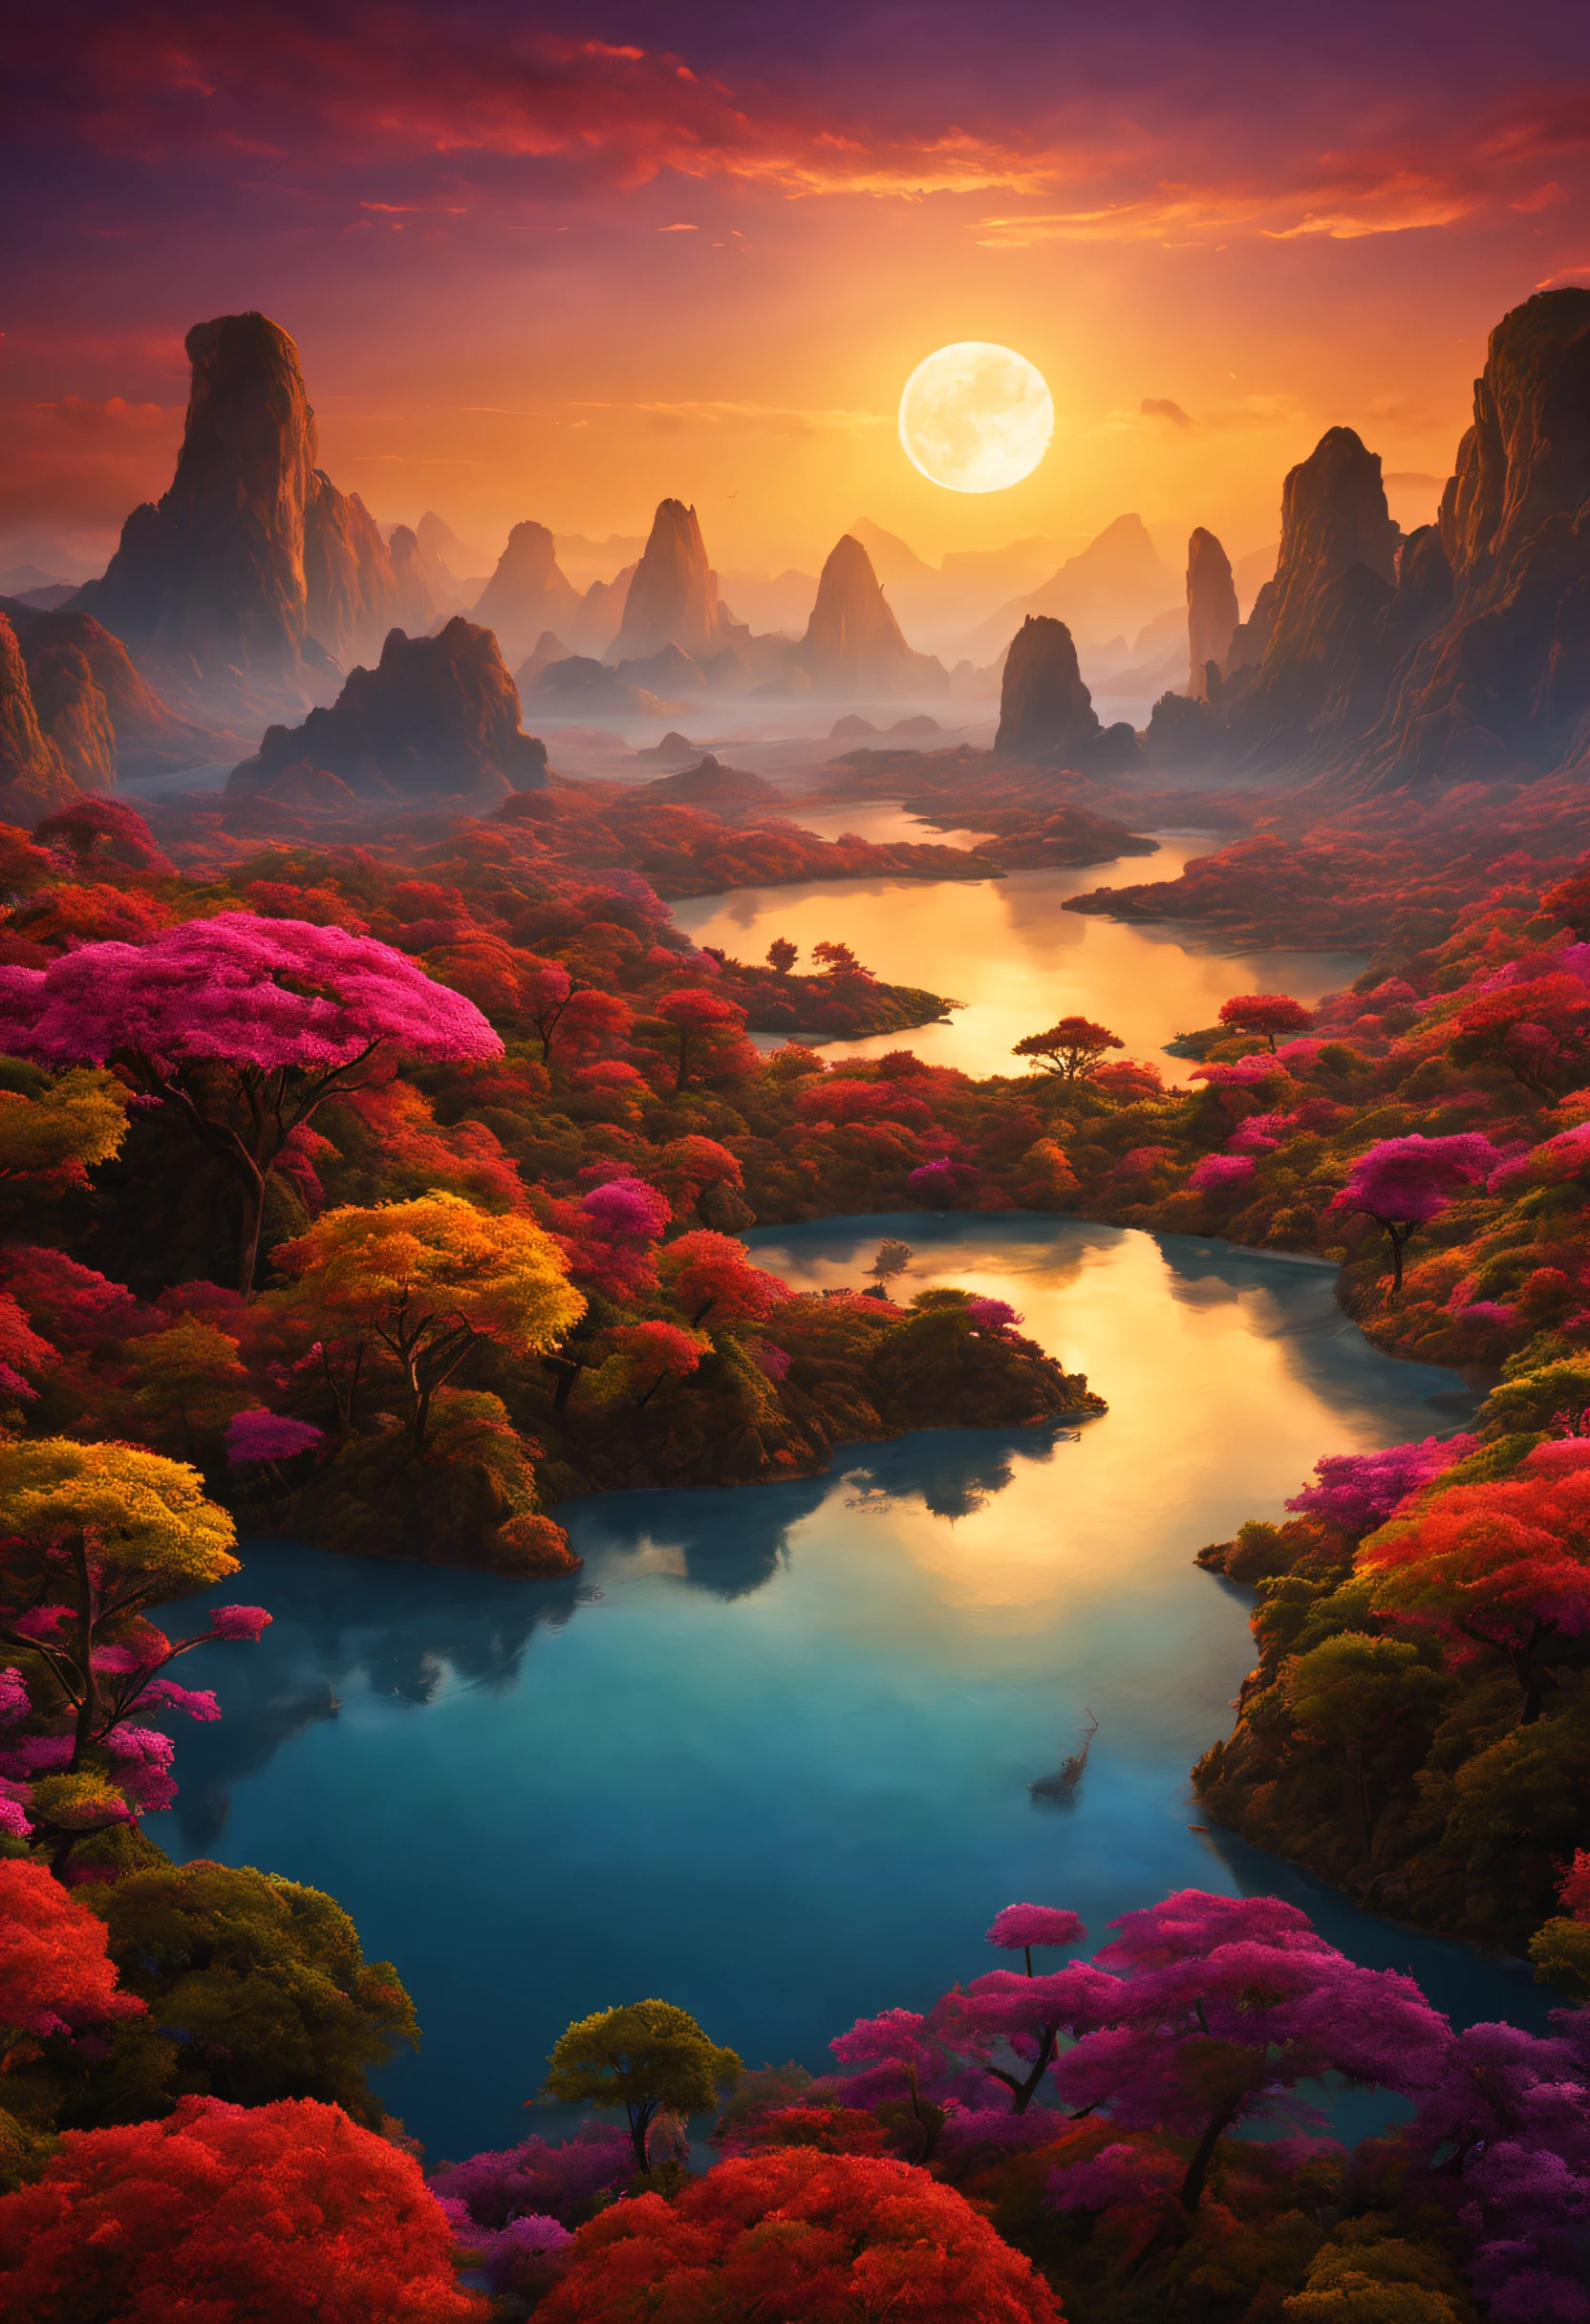 色とりどりの夕焼けと並外れた景色が広がる、異国の惑星の美しく壮大な想像上の風景。